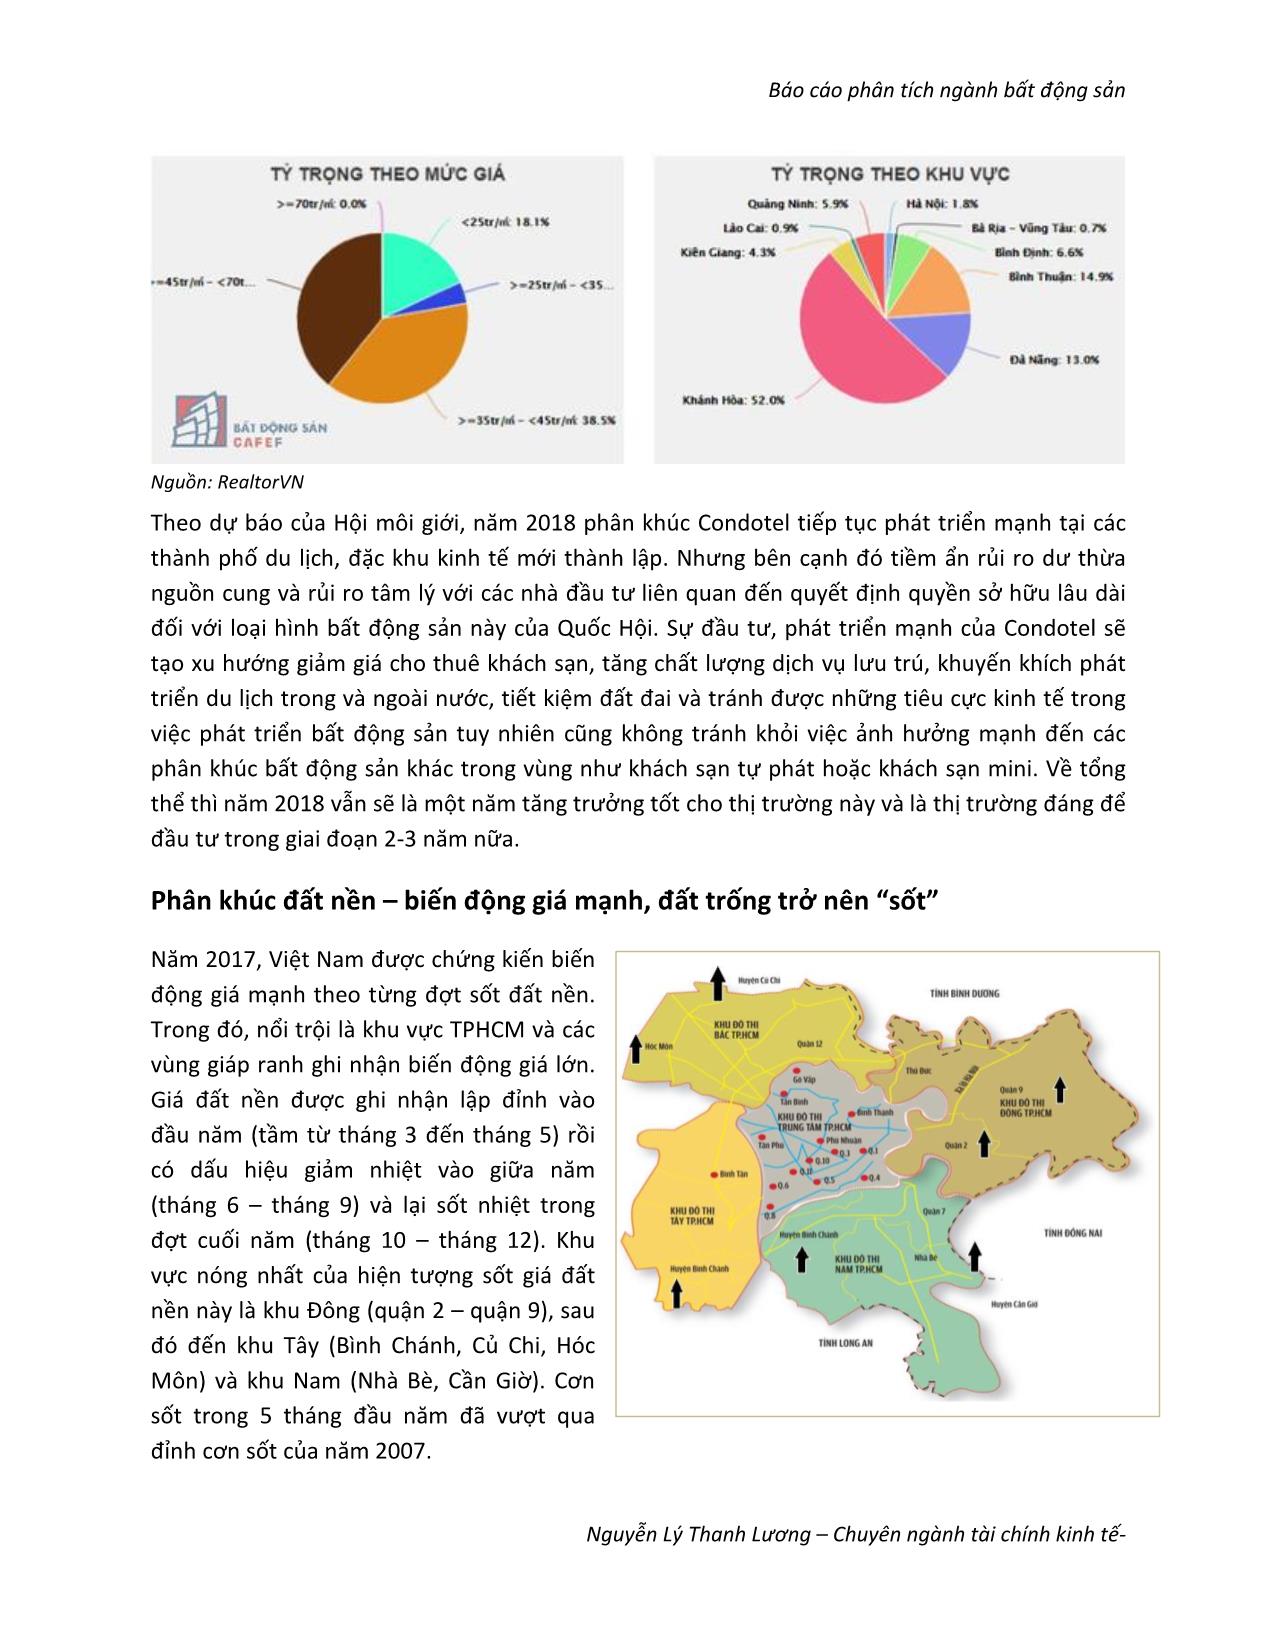 Báo cáo phân tích ngành bất động sản - Nguyễn Lý Thanh Lương trang 6